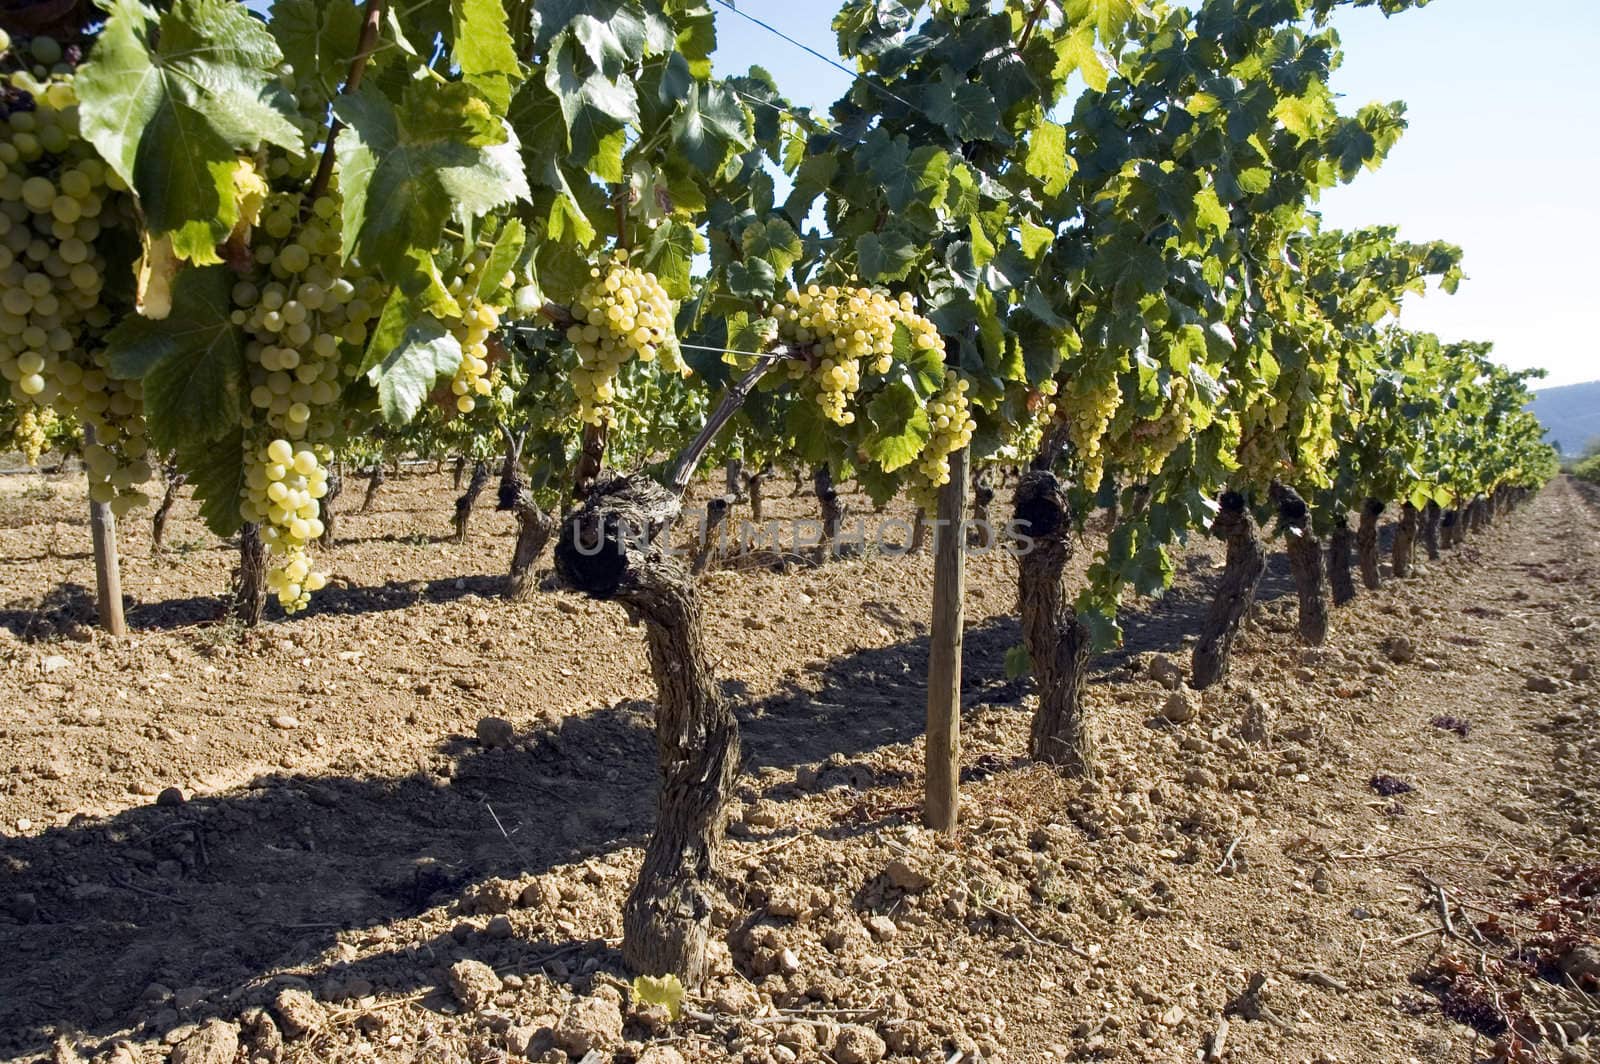 Rows of grape vines in vineyard.